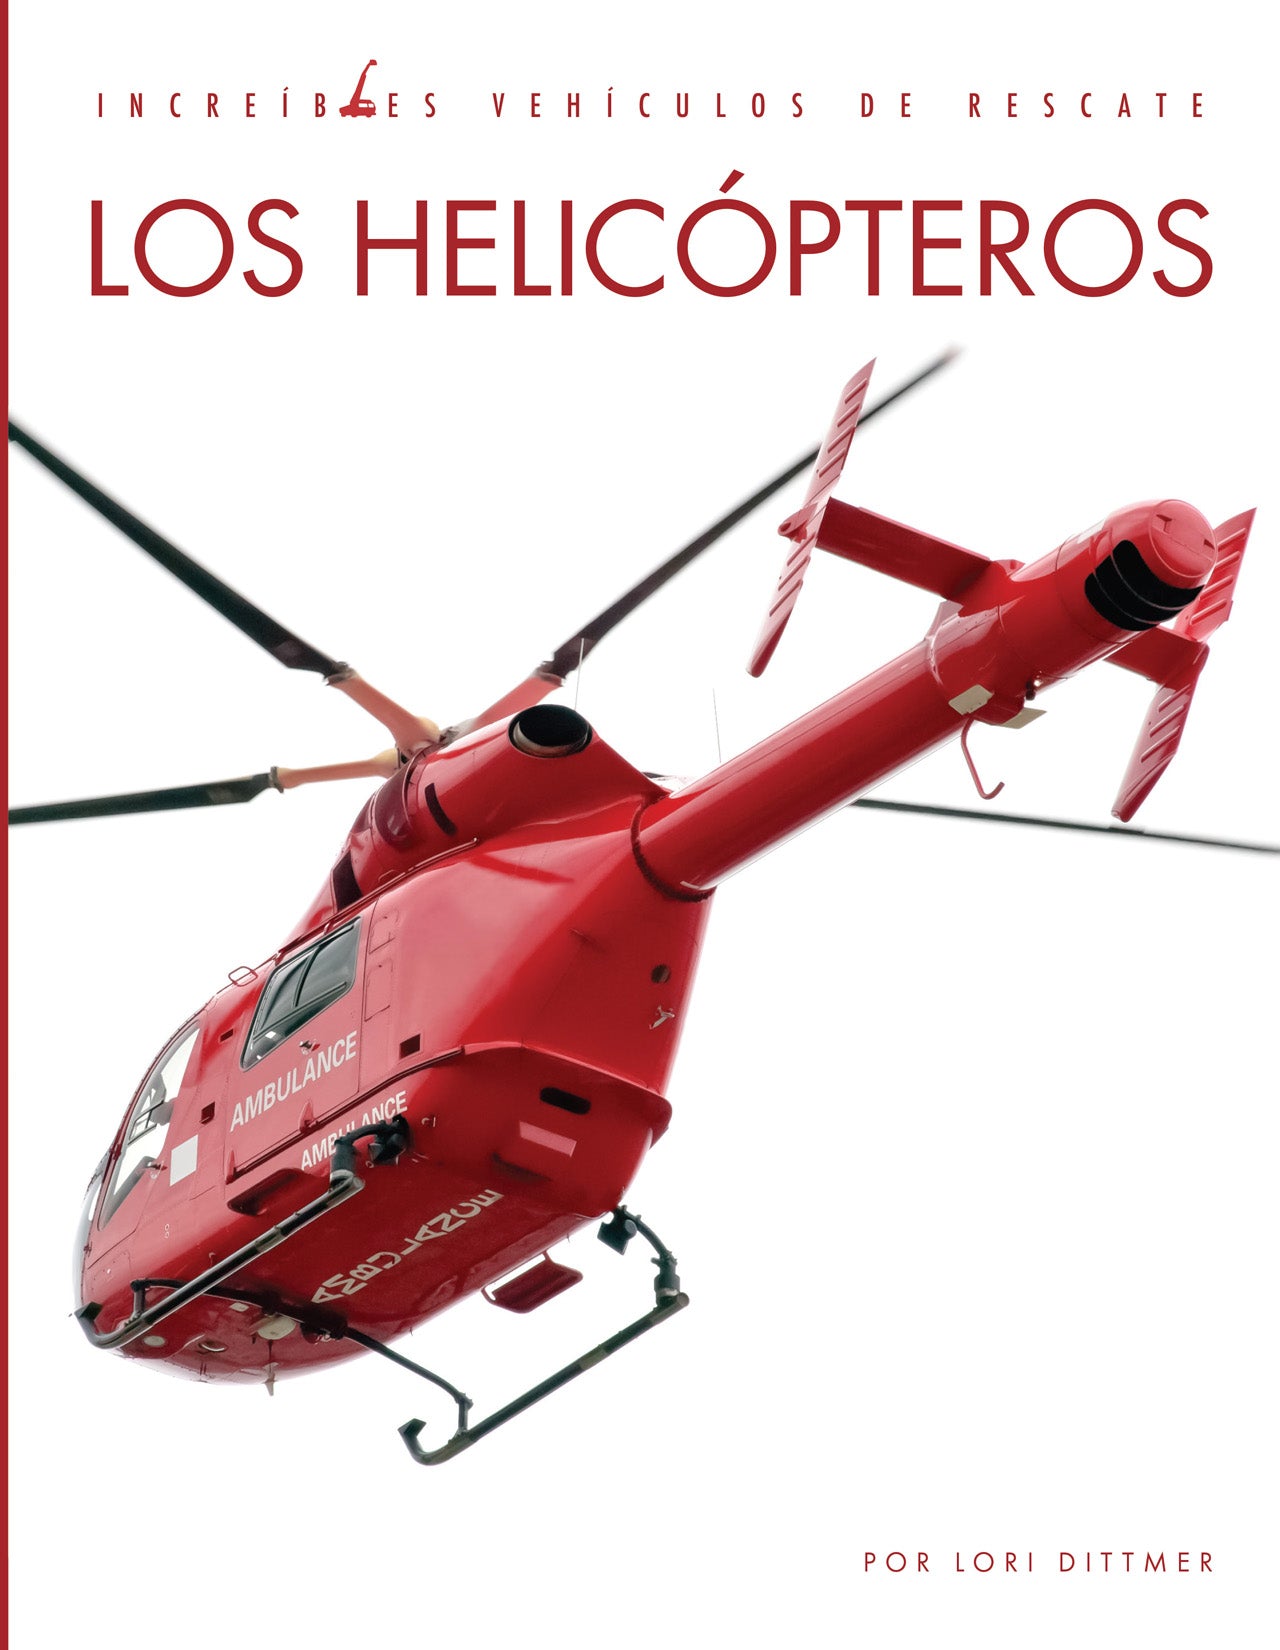 Increíbles vehículos de rescate: Los helicópteros